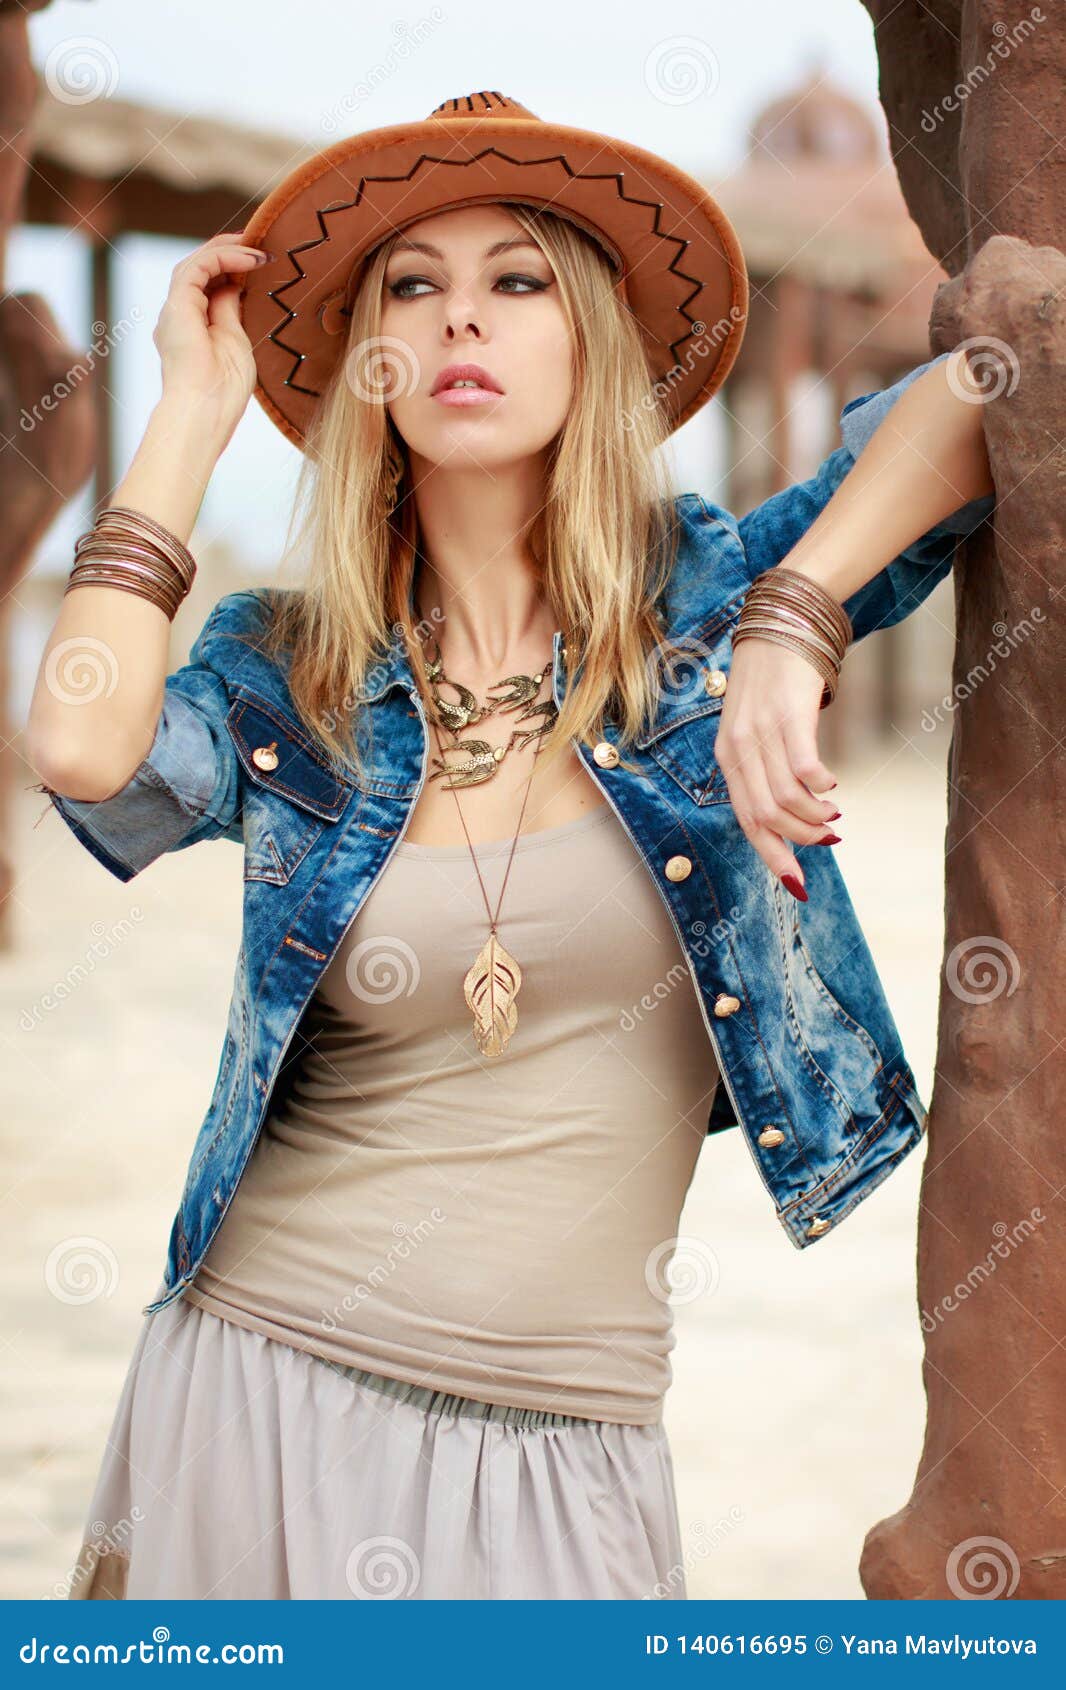 Hermosa Mujer Al Vaquero Occidental, Sombrero Vaquero Chaqueta De Jeans, Fotografía De Retrato De Moda Imagen de archivo - Imagen de cubo, 140616695